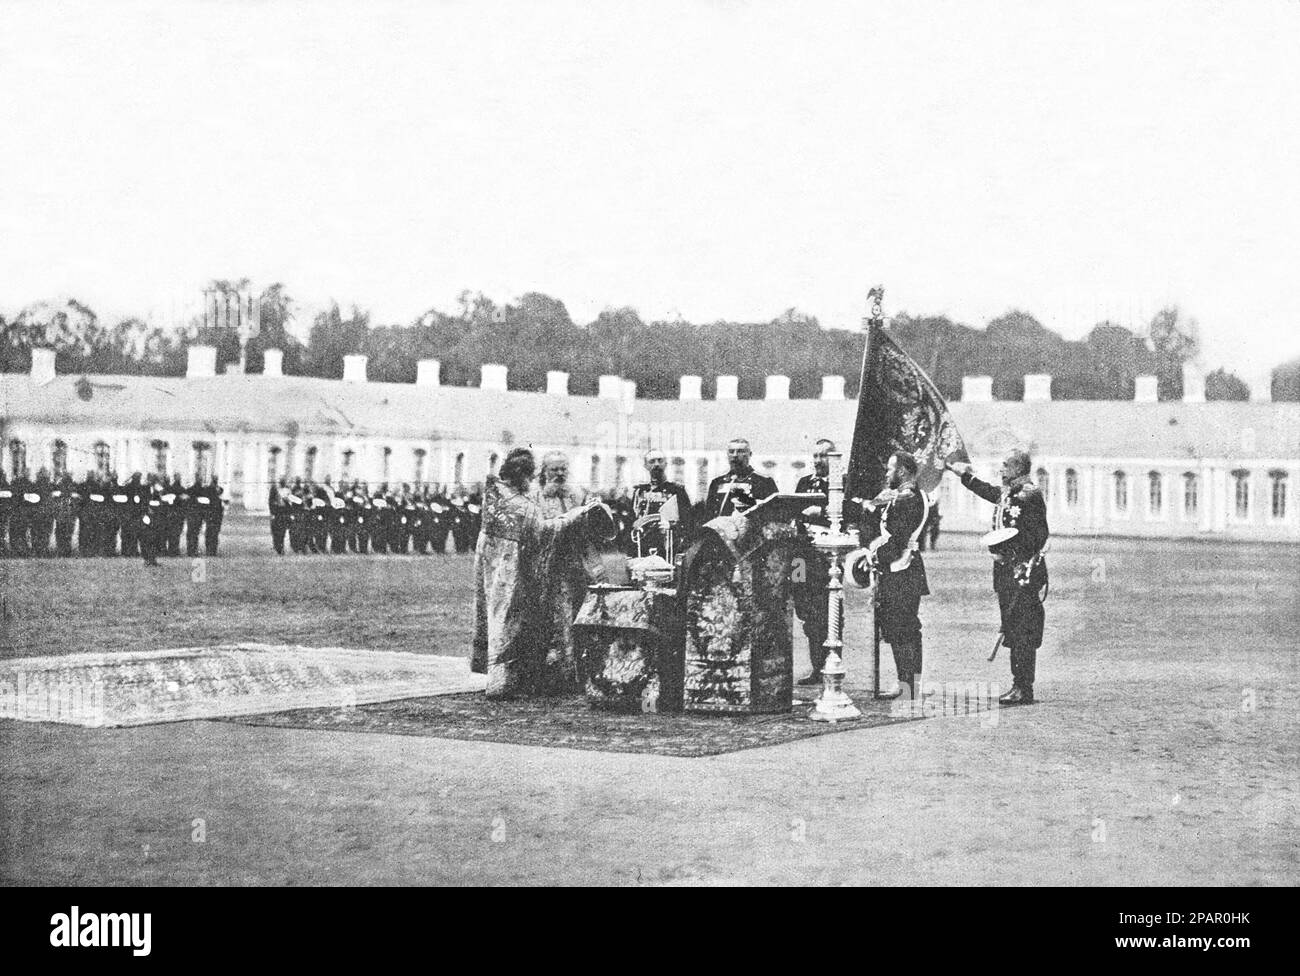 Consacrazione a Tsarskoye Selo di una nuova bandiera concessa all'equipaggio delle guardie in onore del 200th° anniversario della sua esistenza (alla presenza dell'imperatore Nicola II). Foto dal 1910. Foto Stock